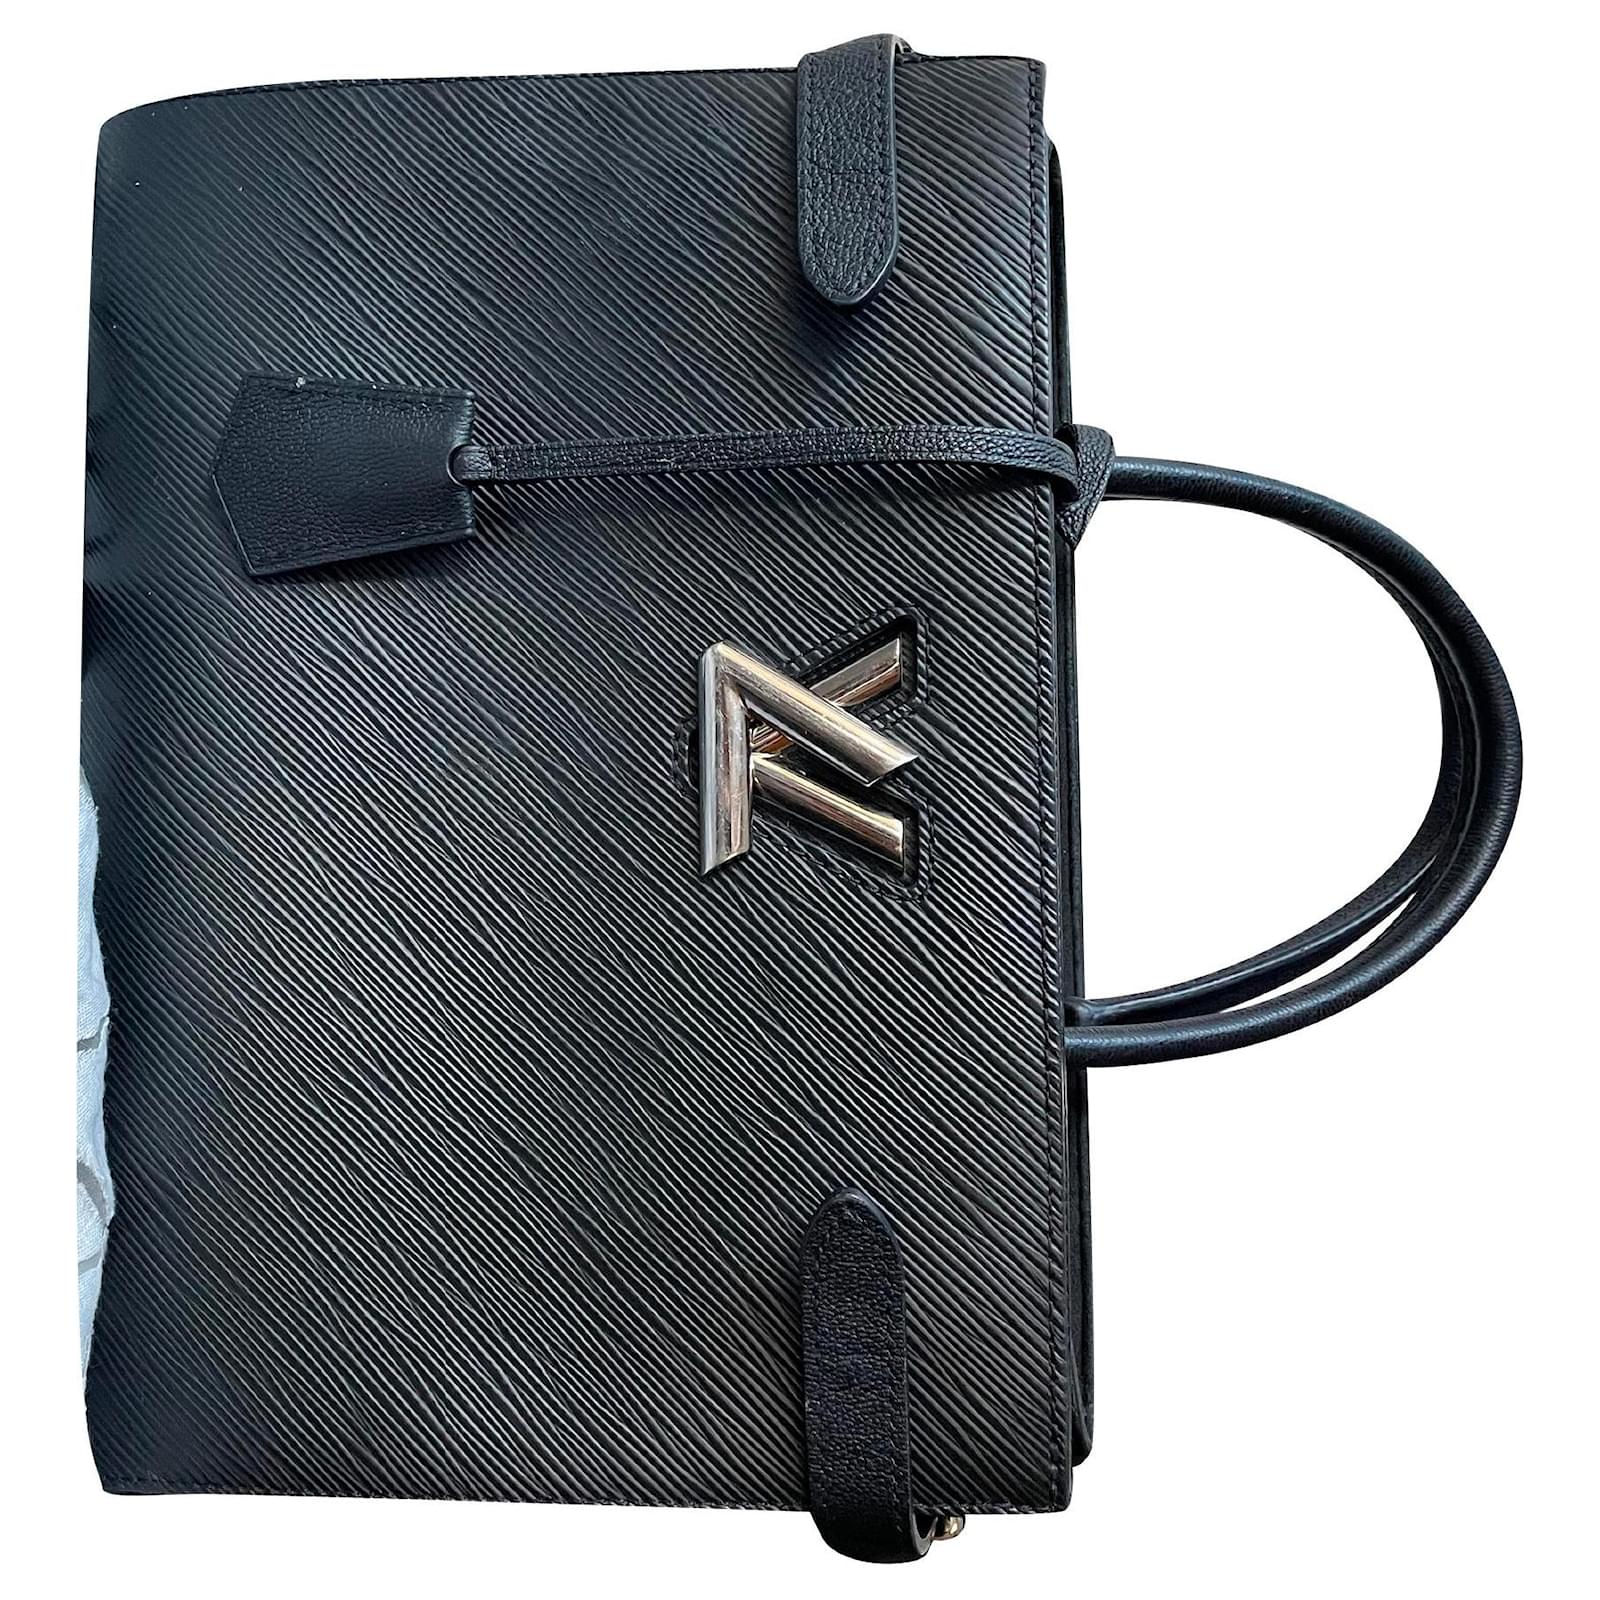 LOUIS VUITTON Twist Edition Limitee Shoulder bag in Black Epi Leather Louis  Vuitton